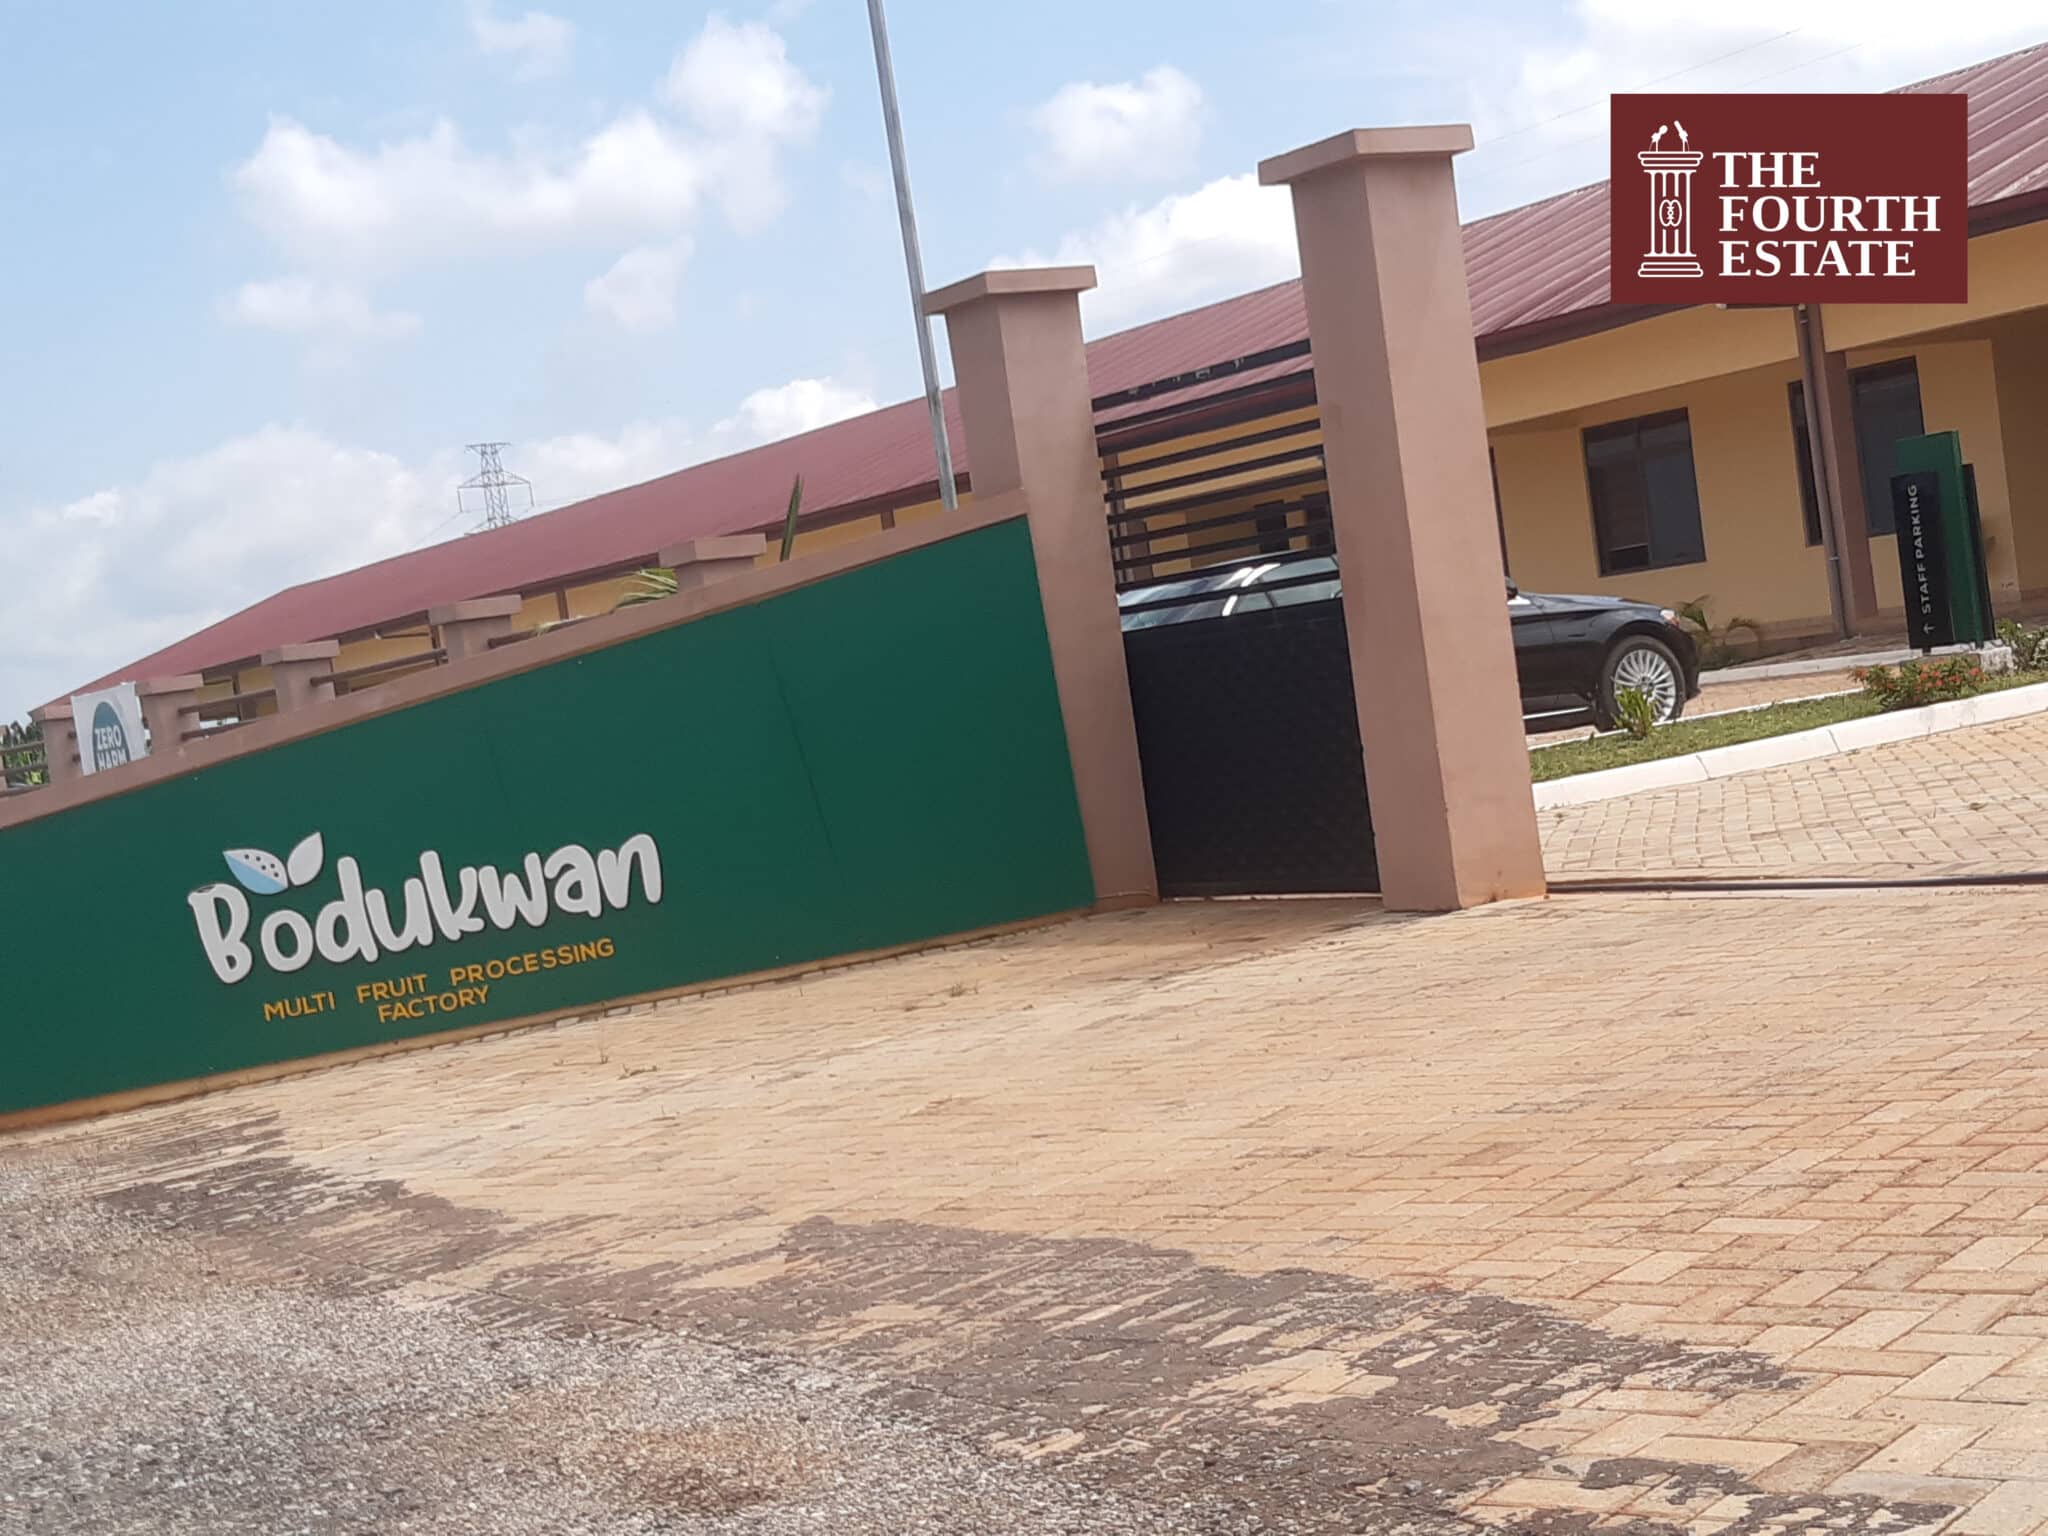 Bodukwan Multi Food Processing Company - Atwima Kwanwoma District